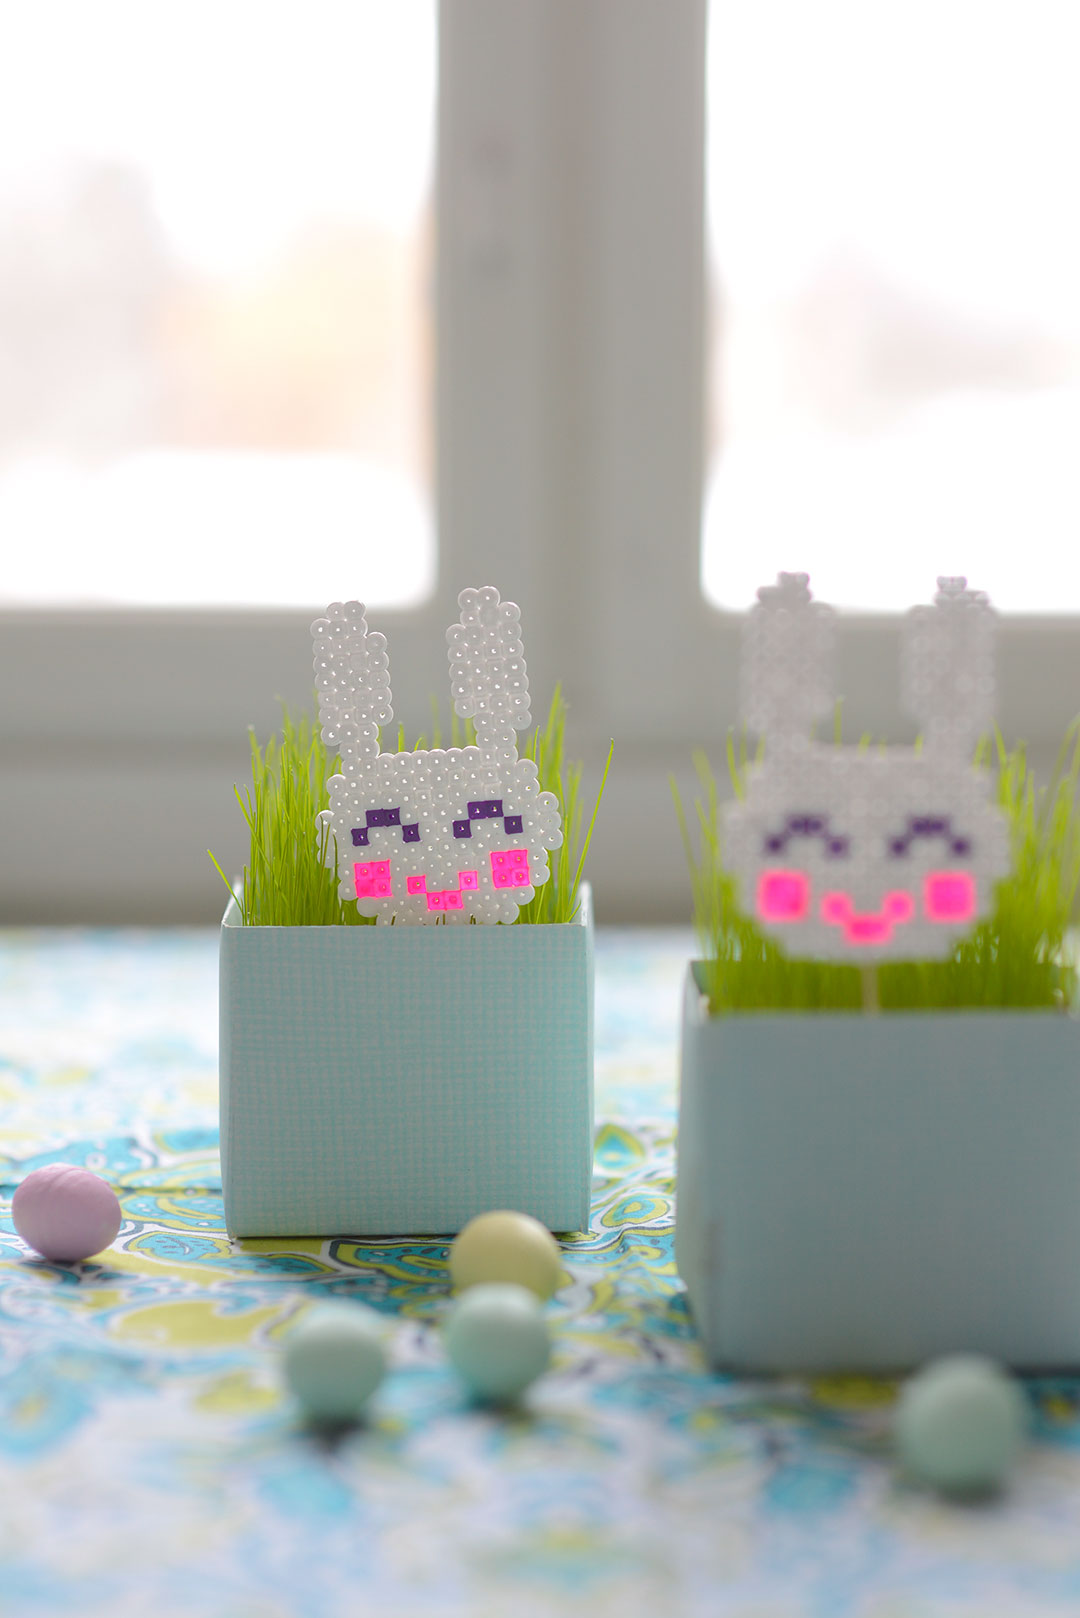 Cute Hama bead bunnies for Easter